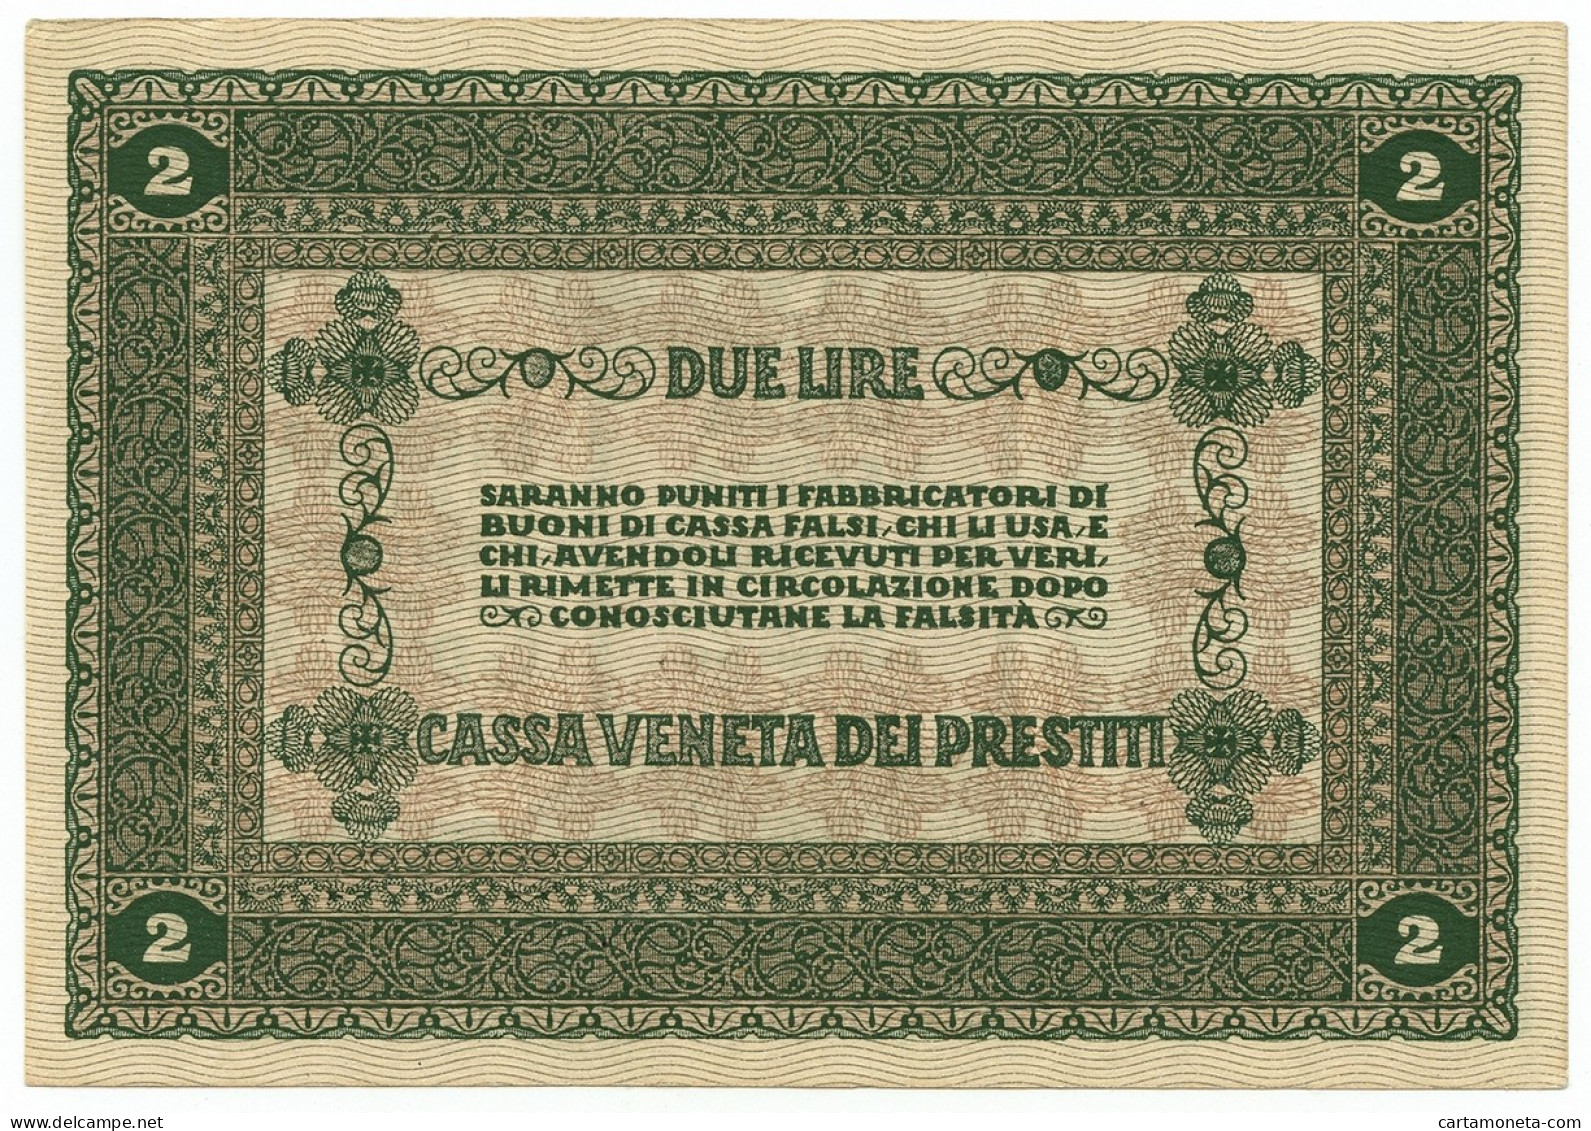 2 LIRE CASSA VENETA DEI PRESTITI OCCUPAZIONE AUSTRIACA 02/01/1918 SUP+ - Austrian Occupation Of Venezia